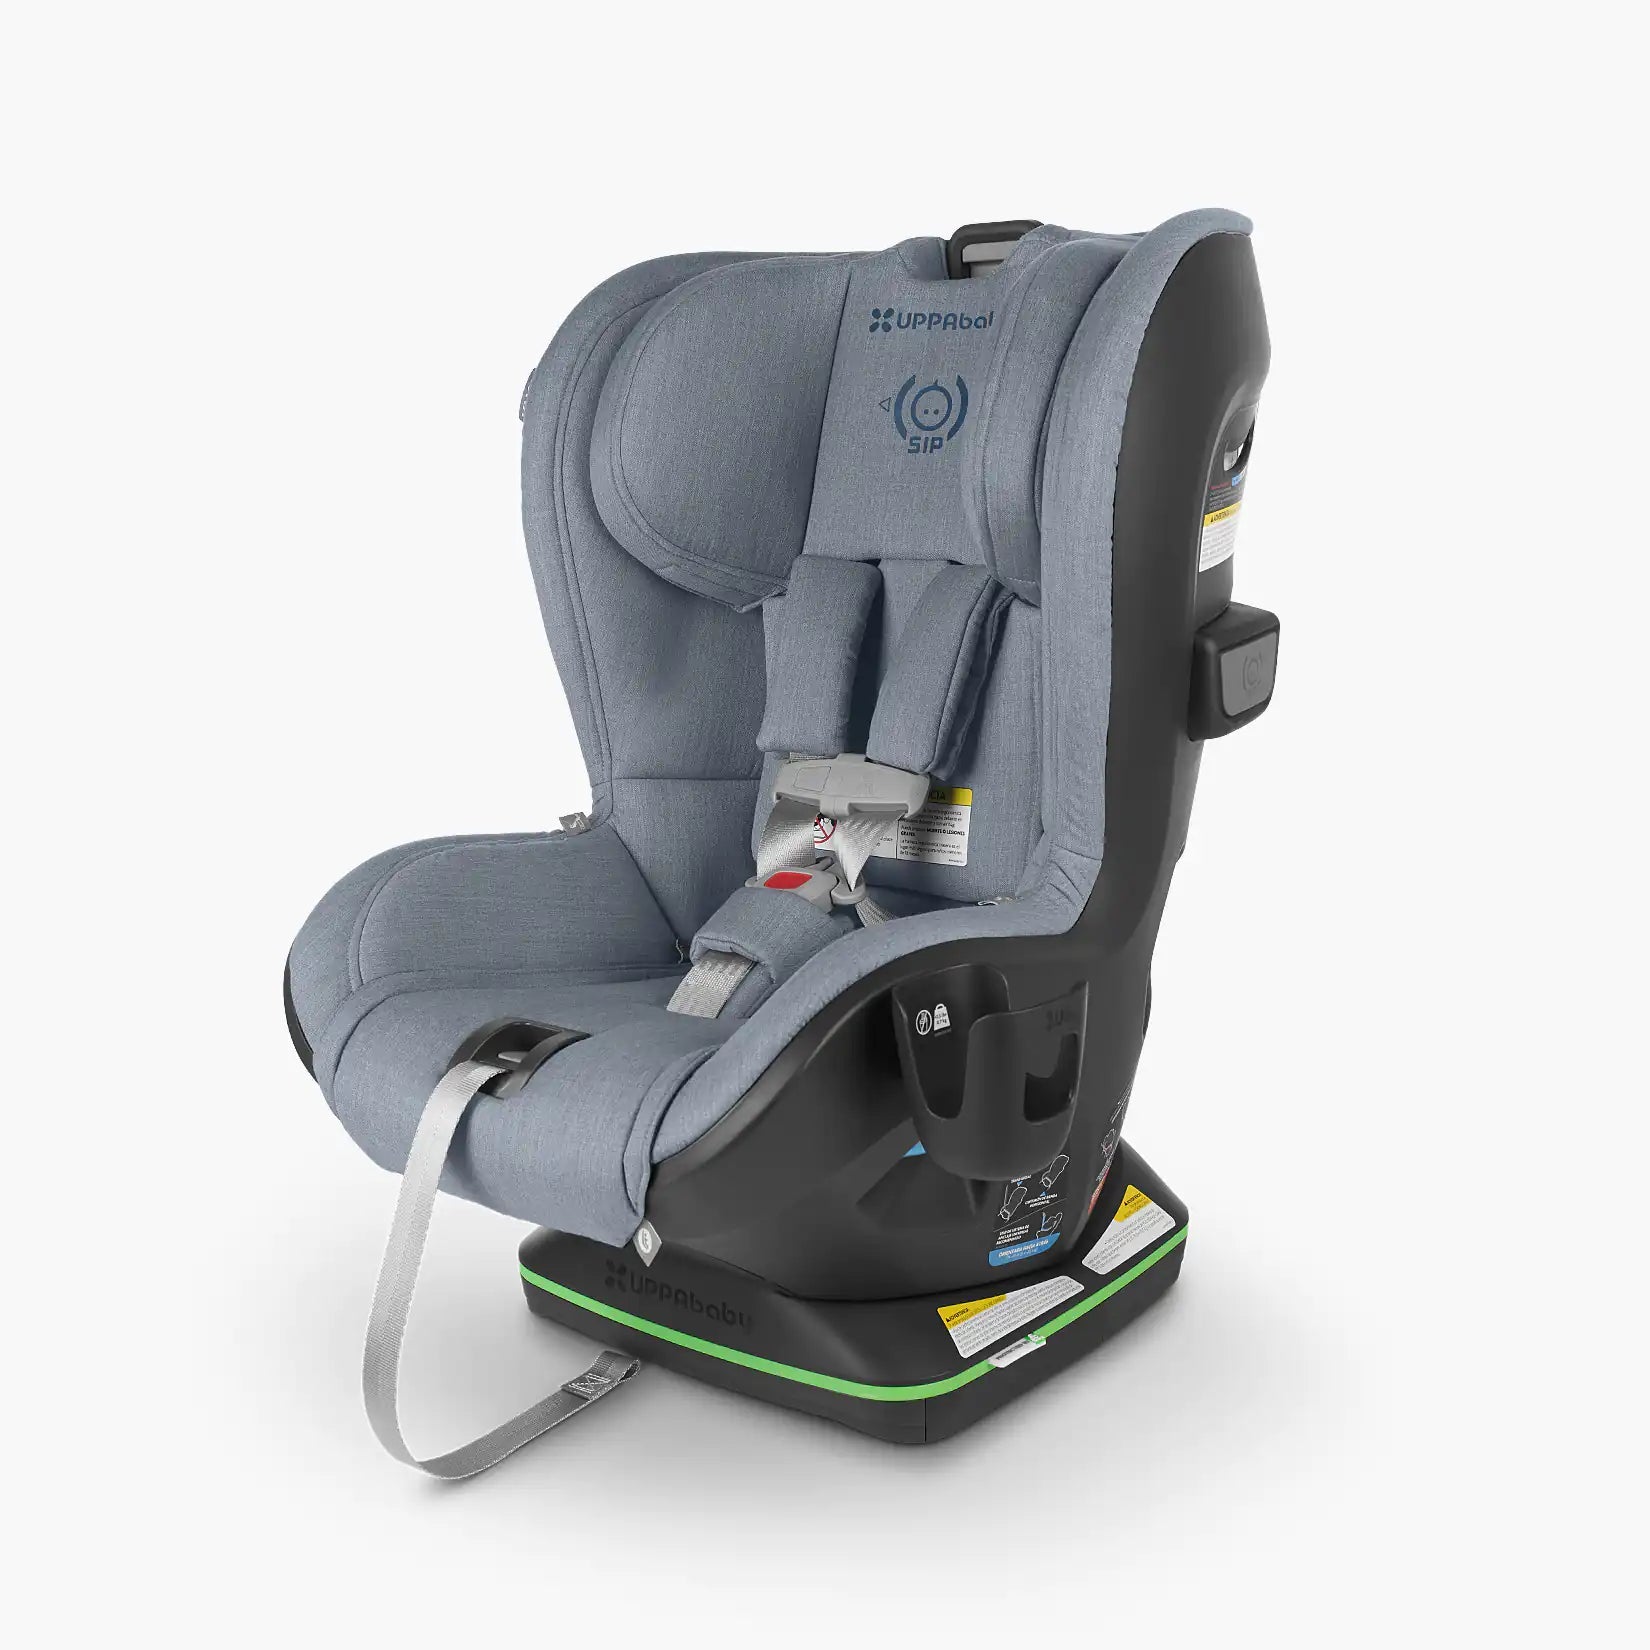 UPPAbaby KNOX Convertible Car Seat - ANB Baby -810030099635$300 - $500